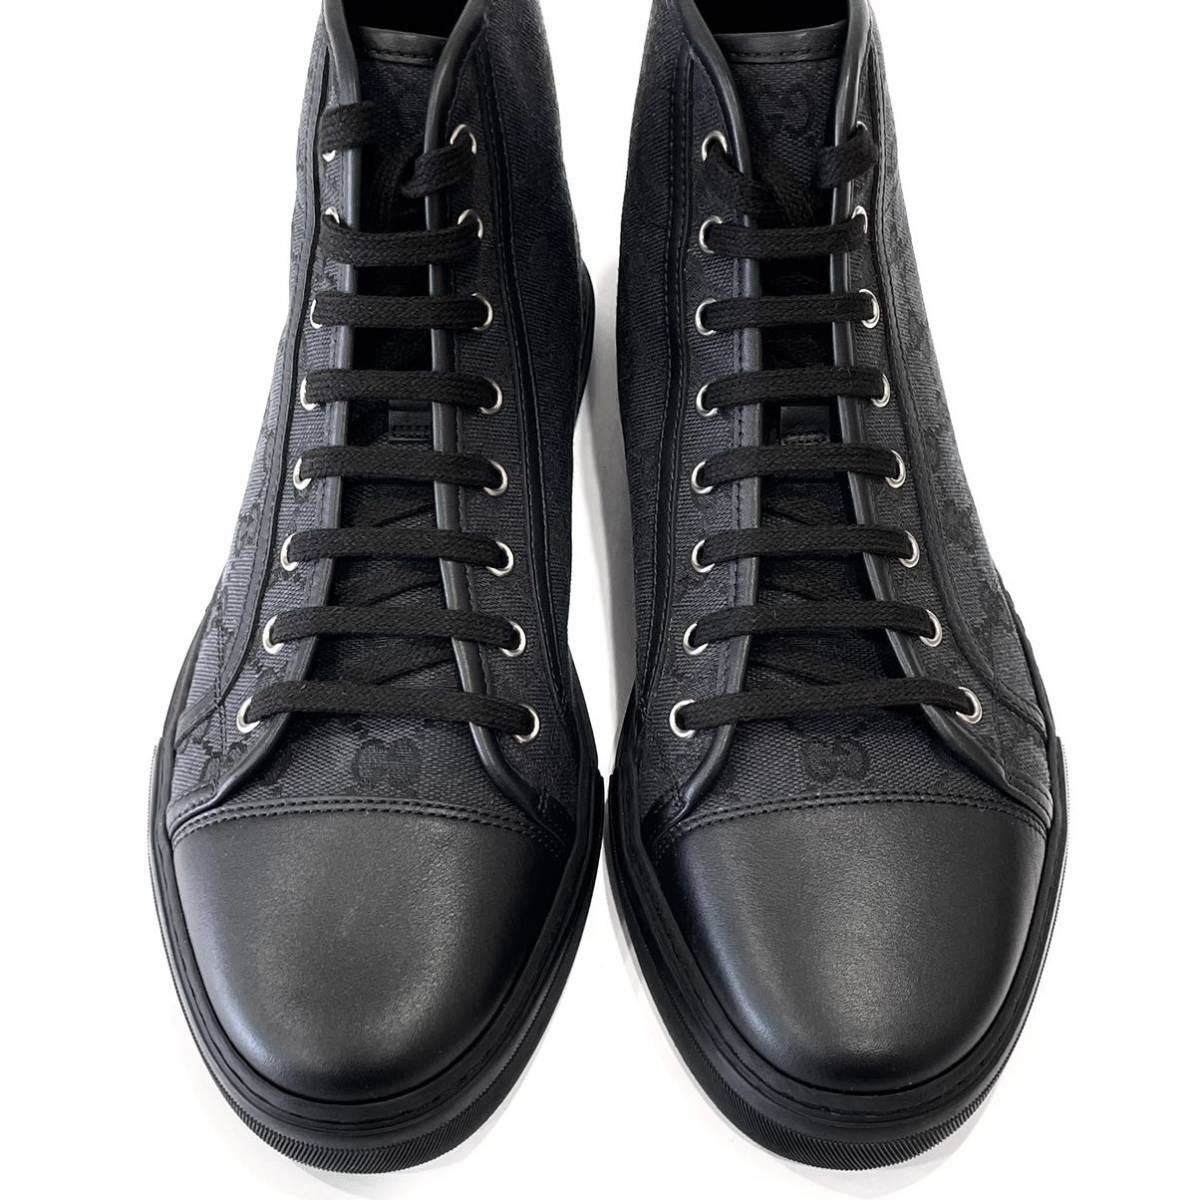  не использовался GUCCI Gucci - ikatto спортивные туфли GG парусина 426188 мужской размер 8 1/2( примерно 27.5cm) черный высота p с коробкой бесплатная доставка 